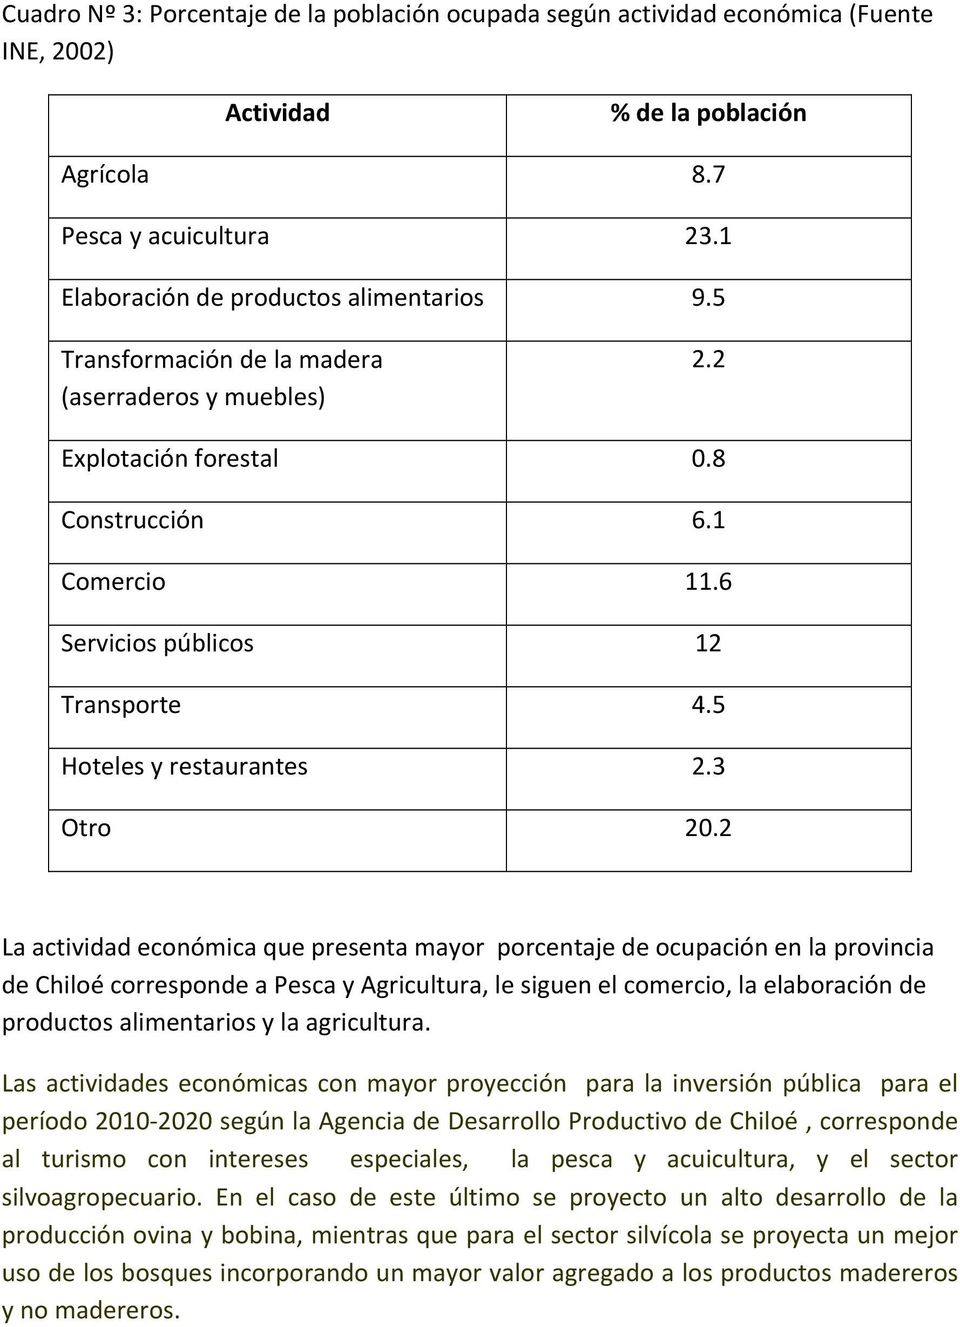 2 La actividad económica que presenta mayor porcentaje de ocupación en la provincia de Chiloé corresponde a Pesca y Agricultura, le siguen el comercio, la elaboración de productos alimentarios y la